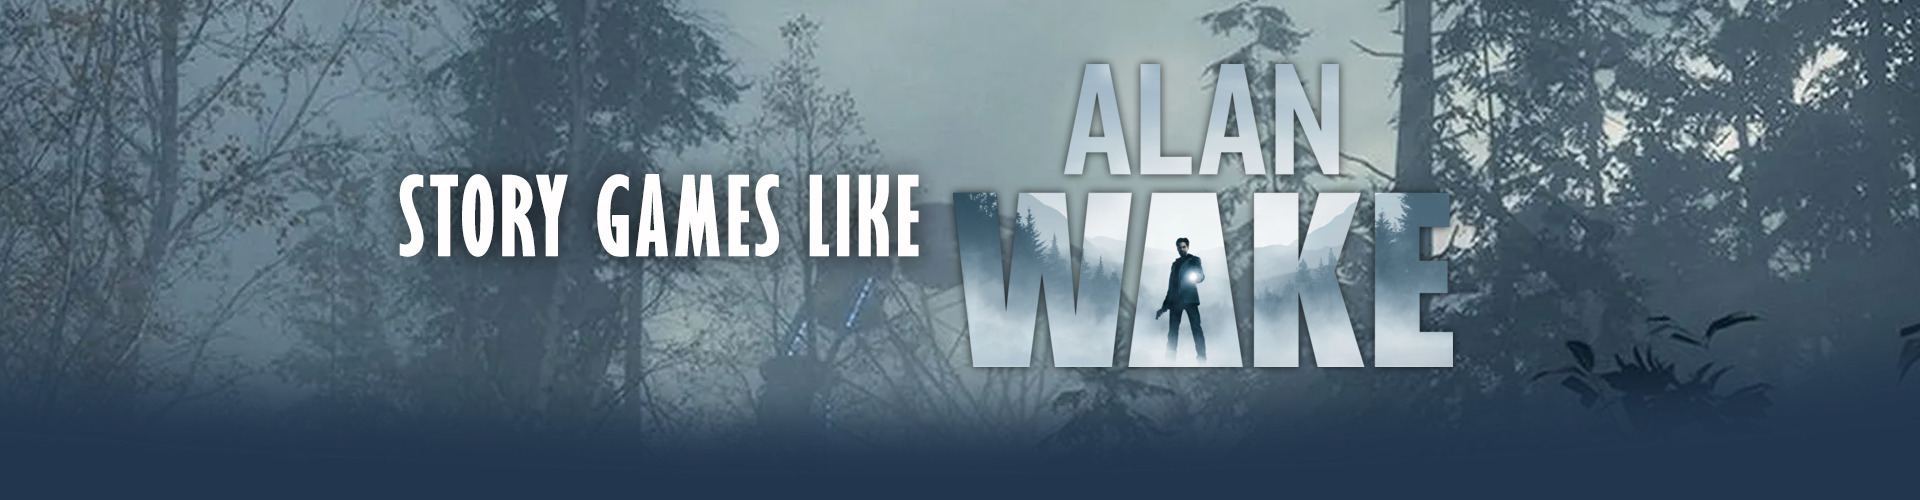 Verhaalspellen zoals Alan Wake